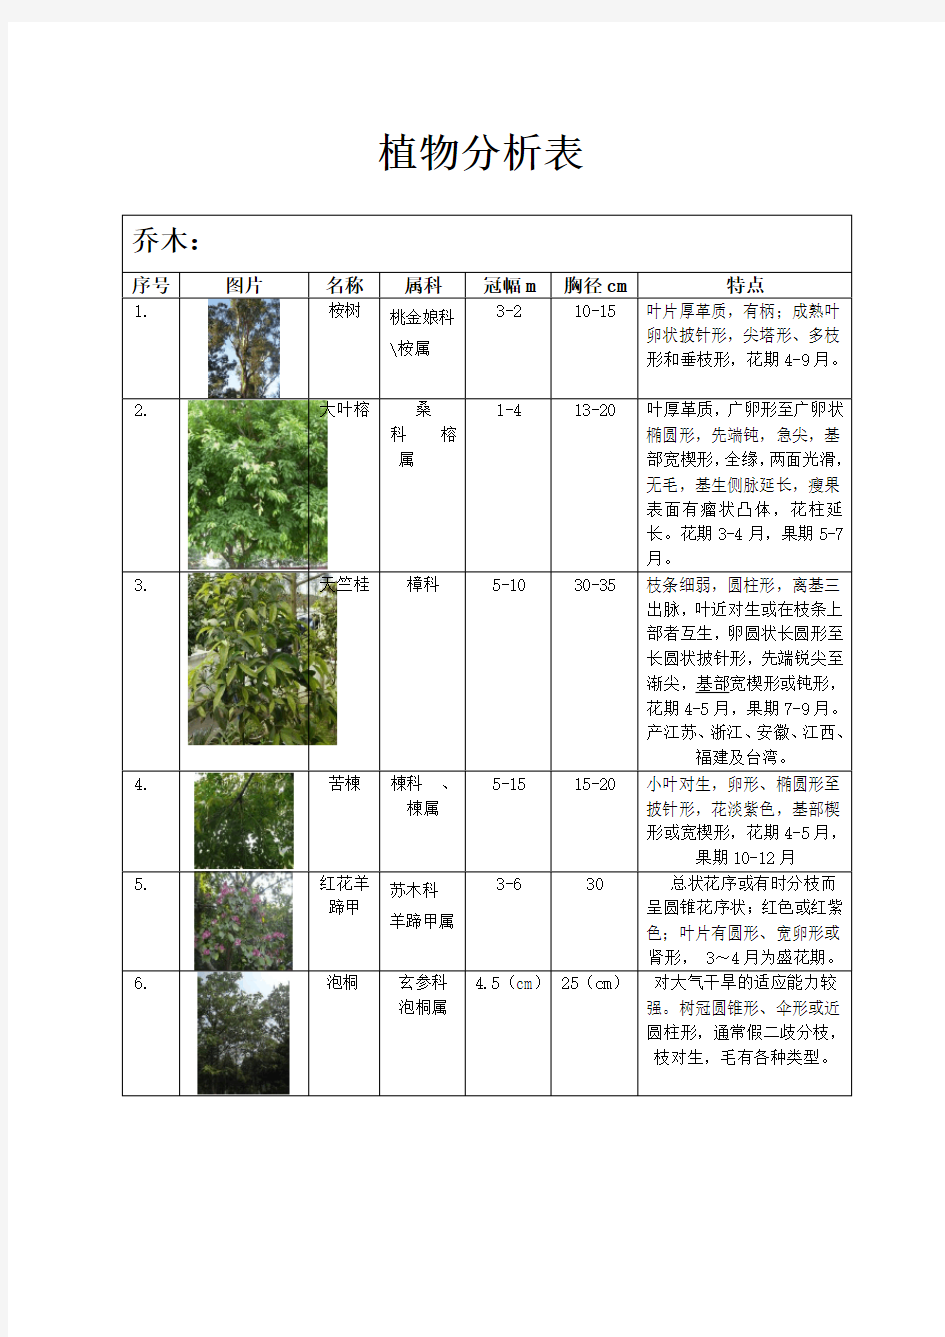 植物配置表